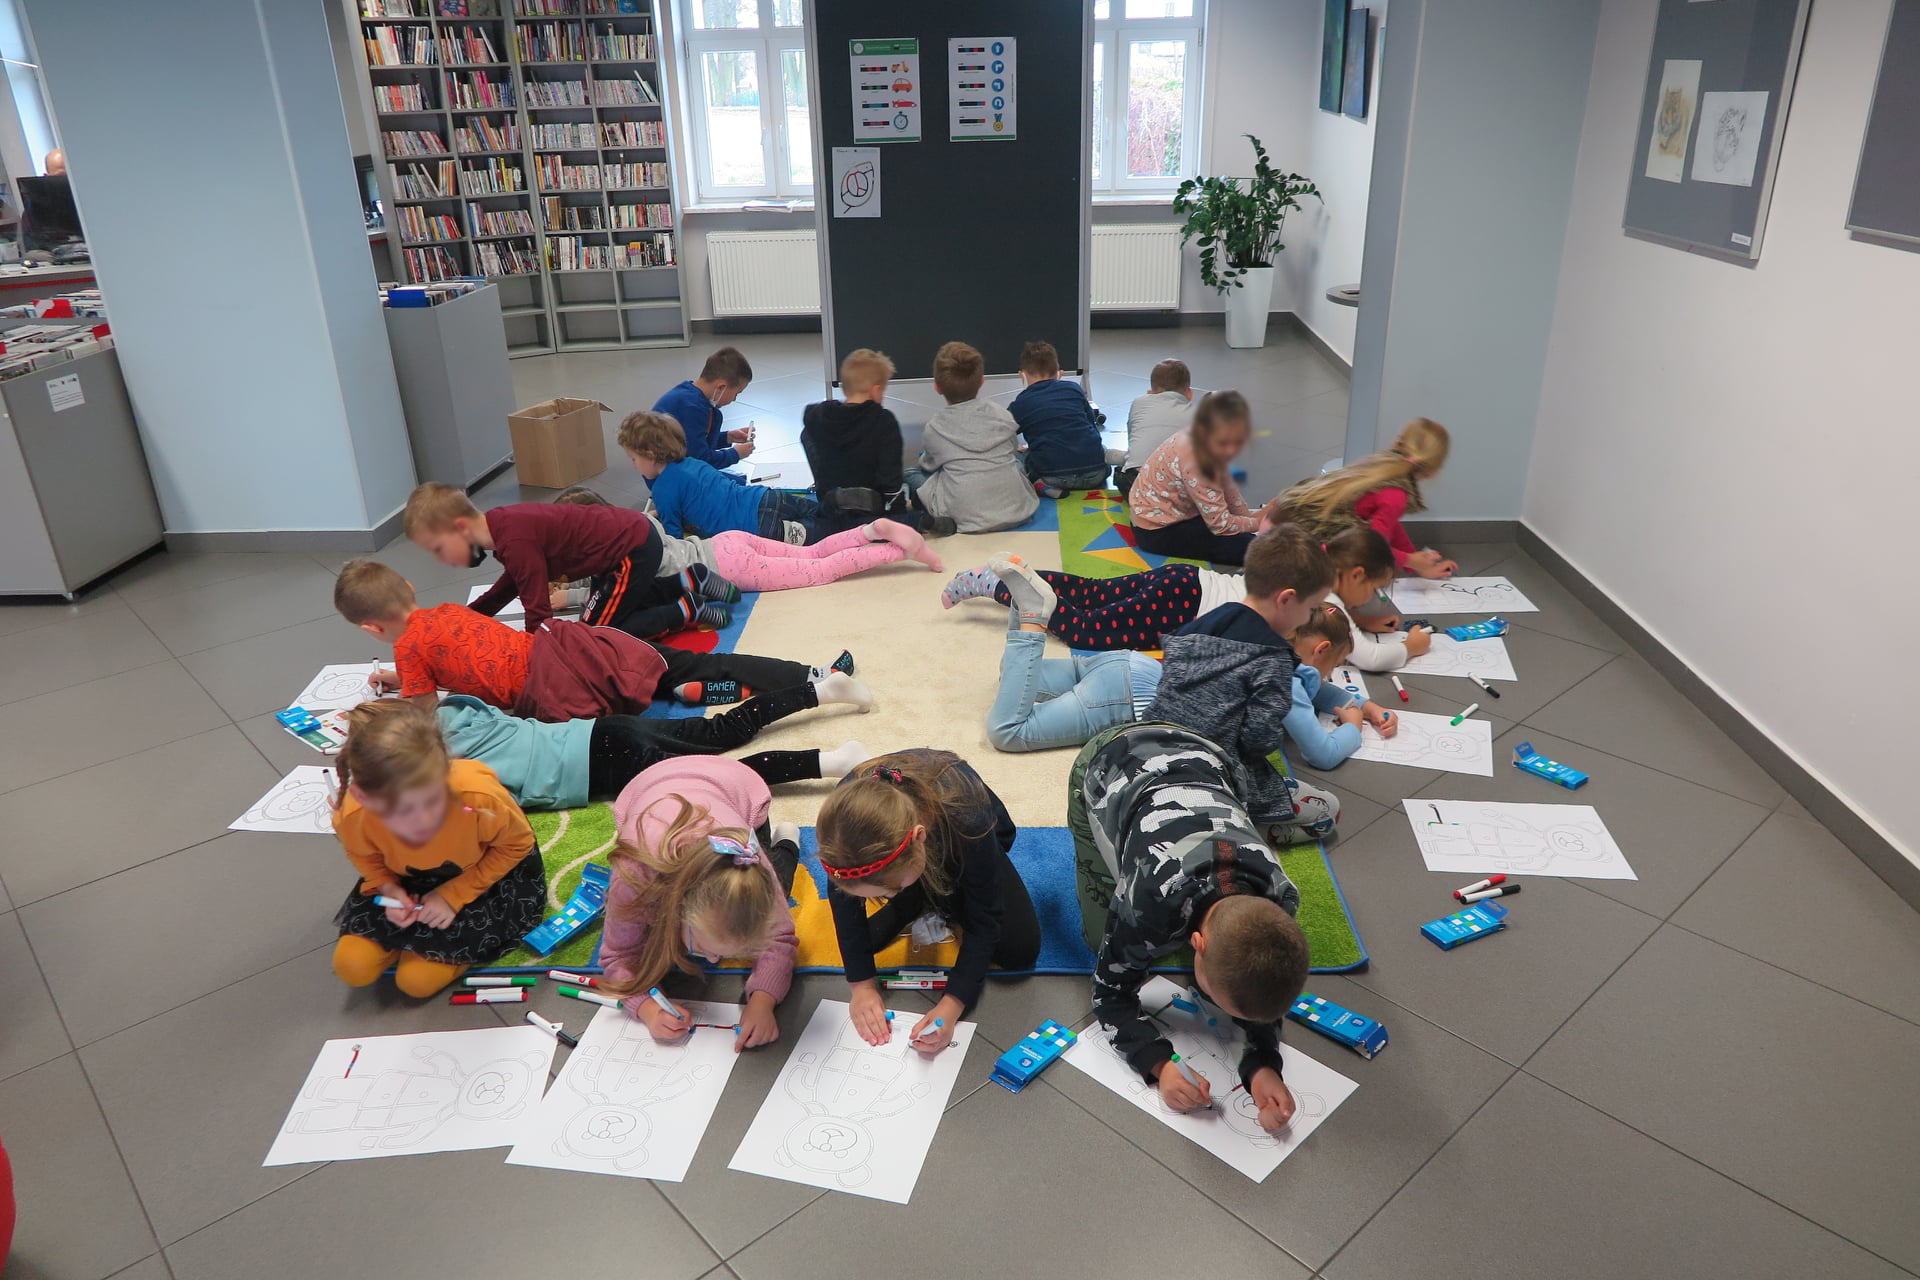 grupa dzieci siedzi/leży na dywanie skierowana na zewnątrz rysując flamastrami trasę dla osobotów w kształcie misia, w tle stoi tablica z przywieszonymi kodami ruchu ozobata